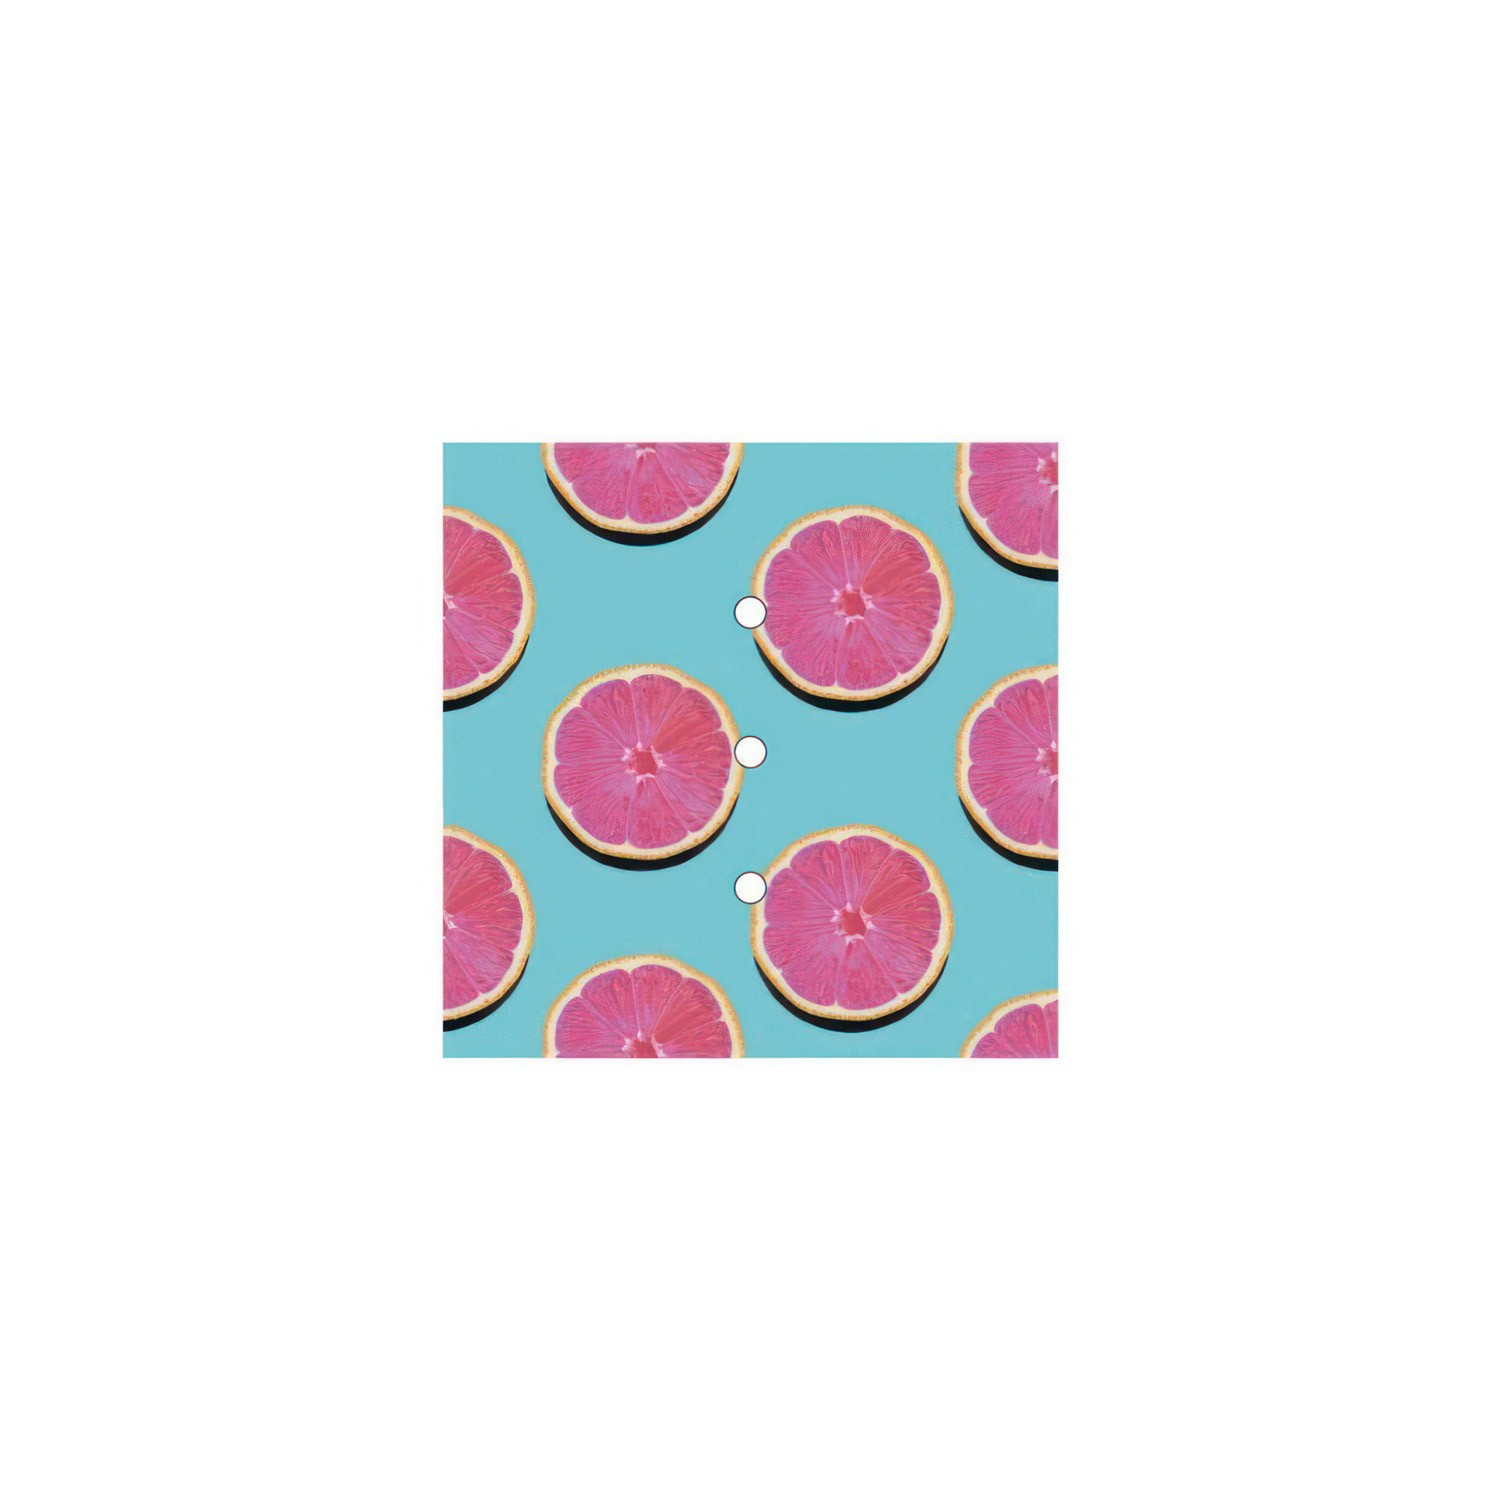 Rosace Rose-One carré de 200 mm avec 3 trous alignés et 4 trous latéraux - PROMO